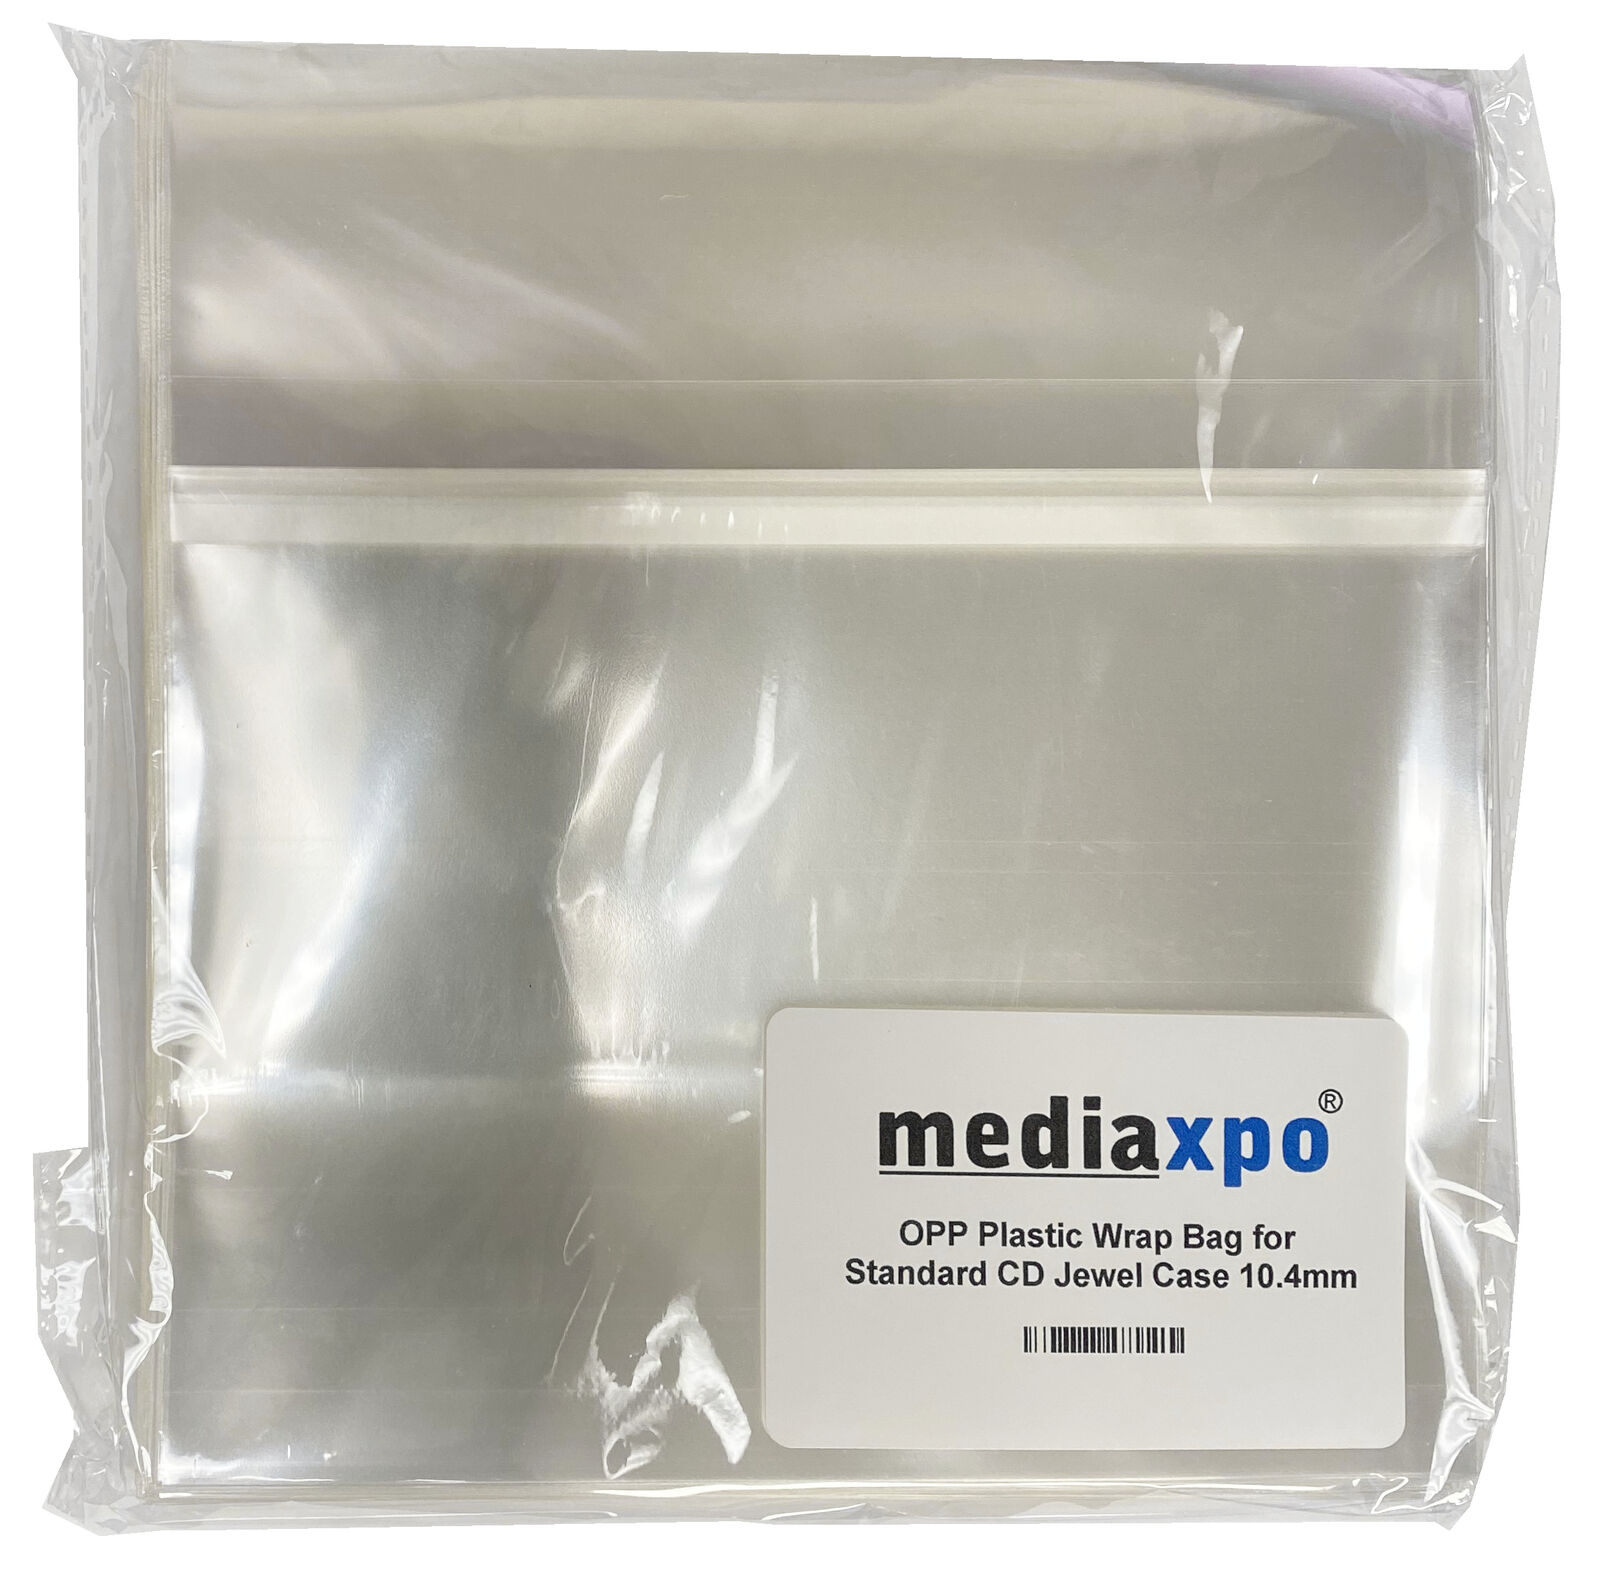 OPP Plastic Wrap Bag for Standard CD Jewel Case 10.4mm Lot